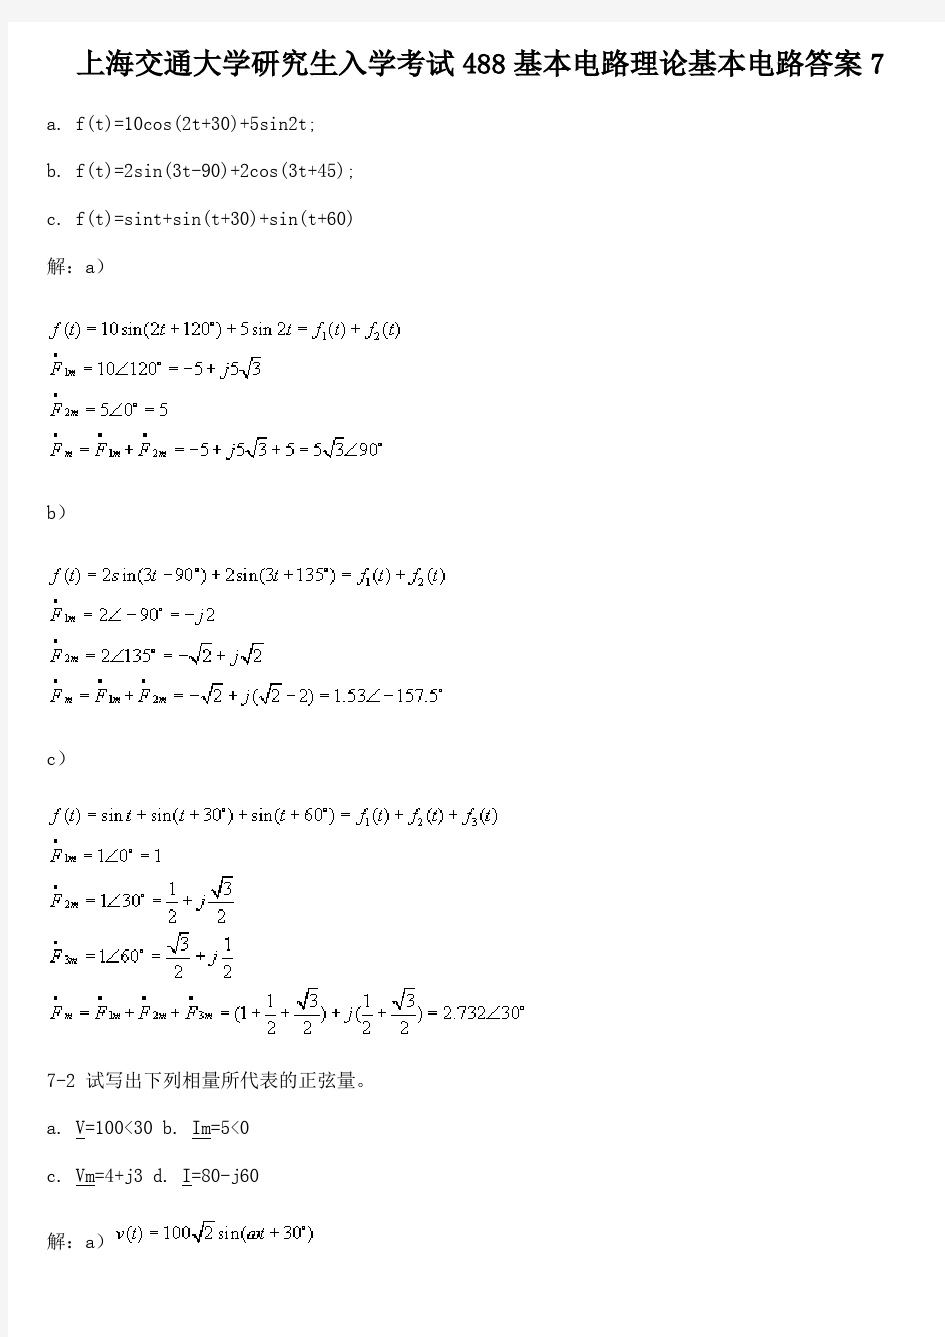 上海交通大学研究生入学考试488基本电路理论基本电路答案7